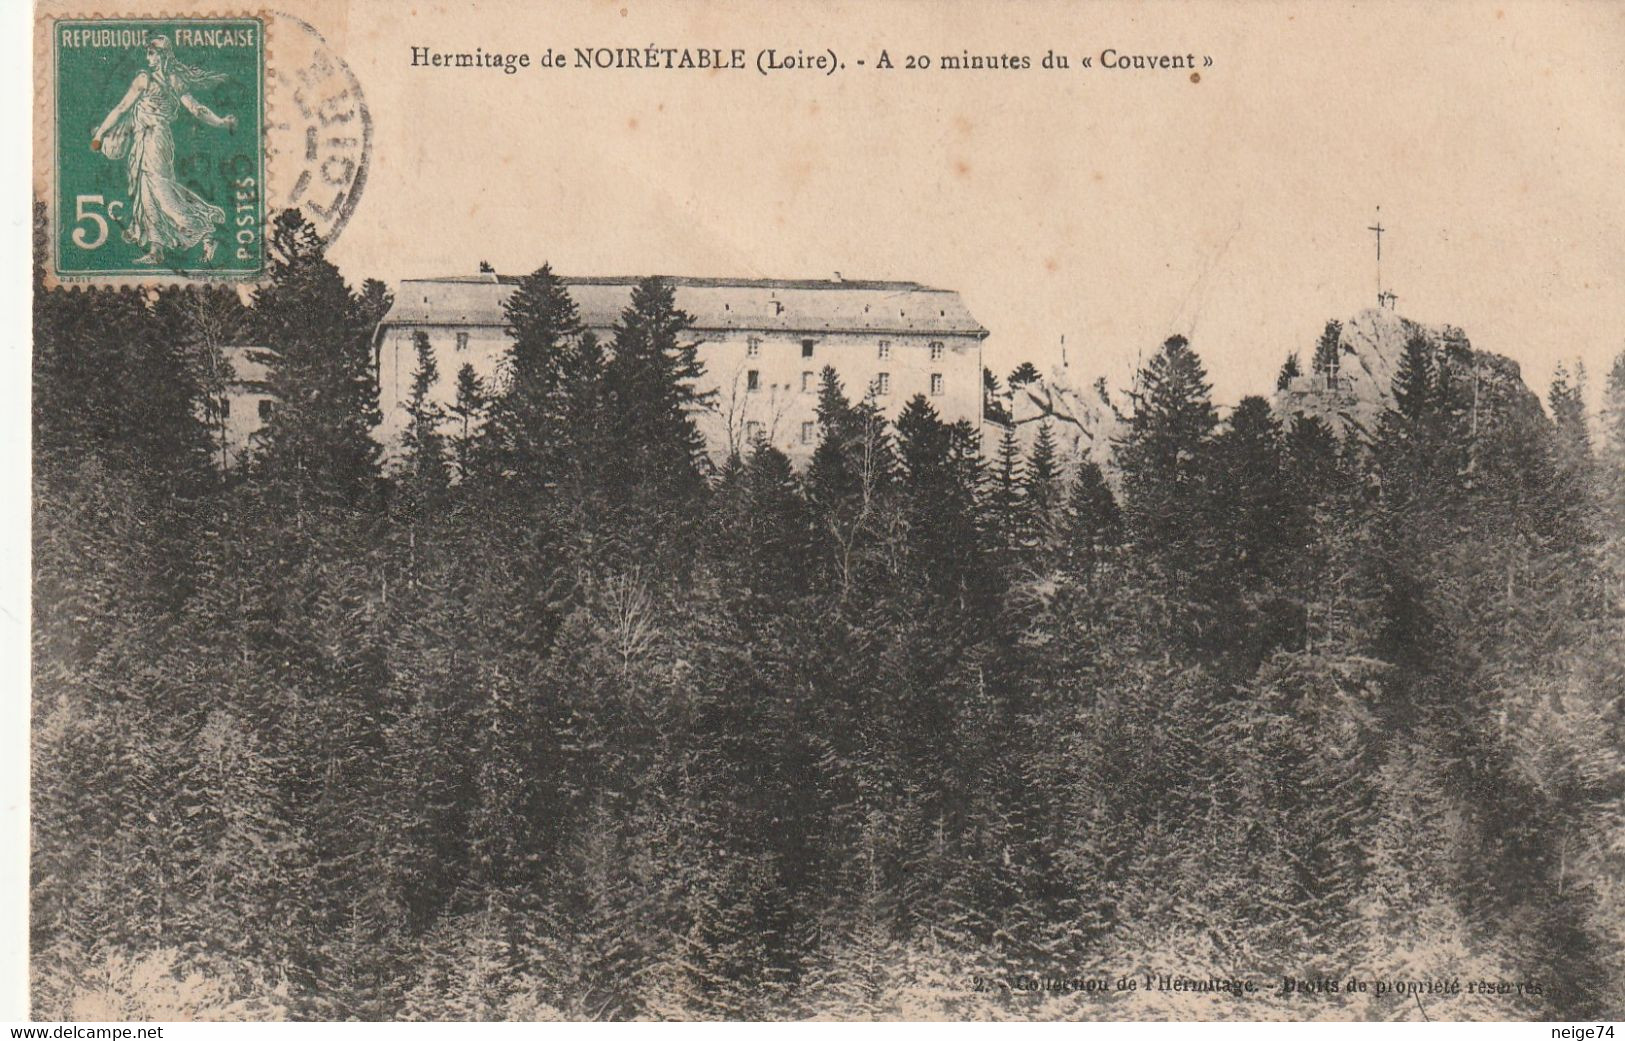 Carte Postale Ancienne De La Loire - Hermitage De Noirétable - à 20 Minutes Du "Couvent" - Noiretable